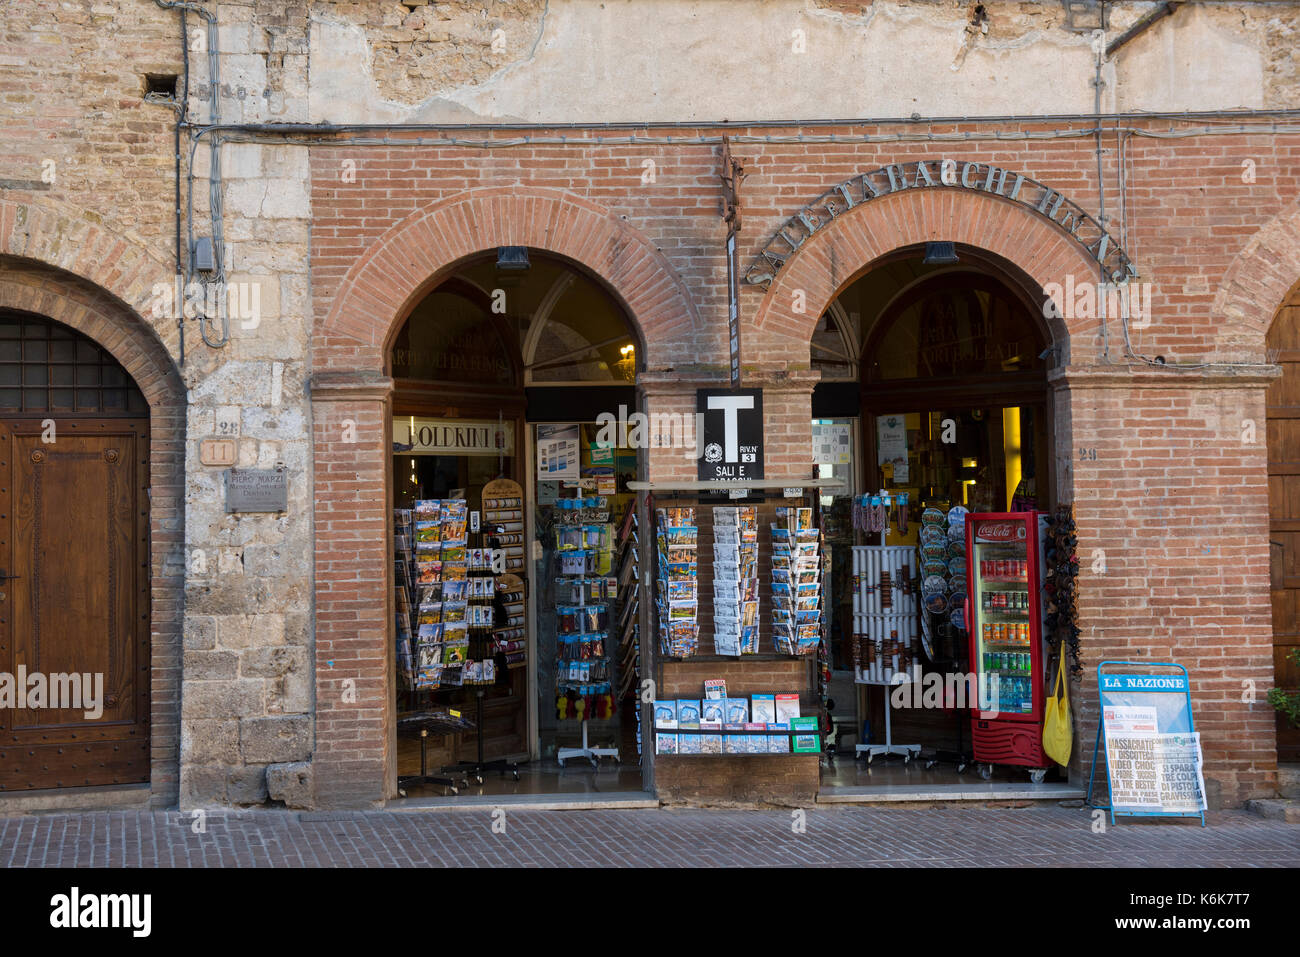 Tabacchi Shop in San Gimignano, Tuscany Italy Europe EU Stock Photo